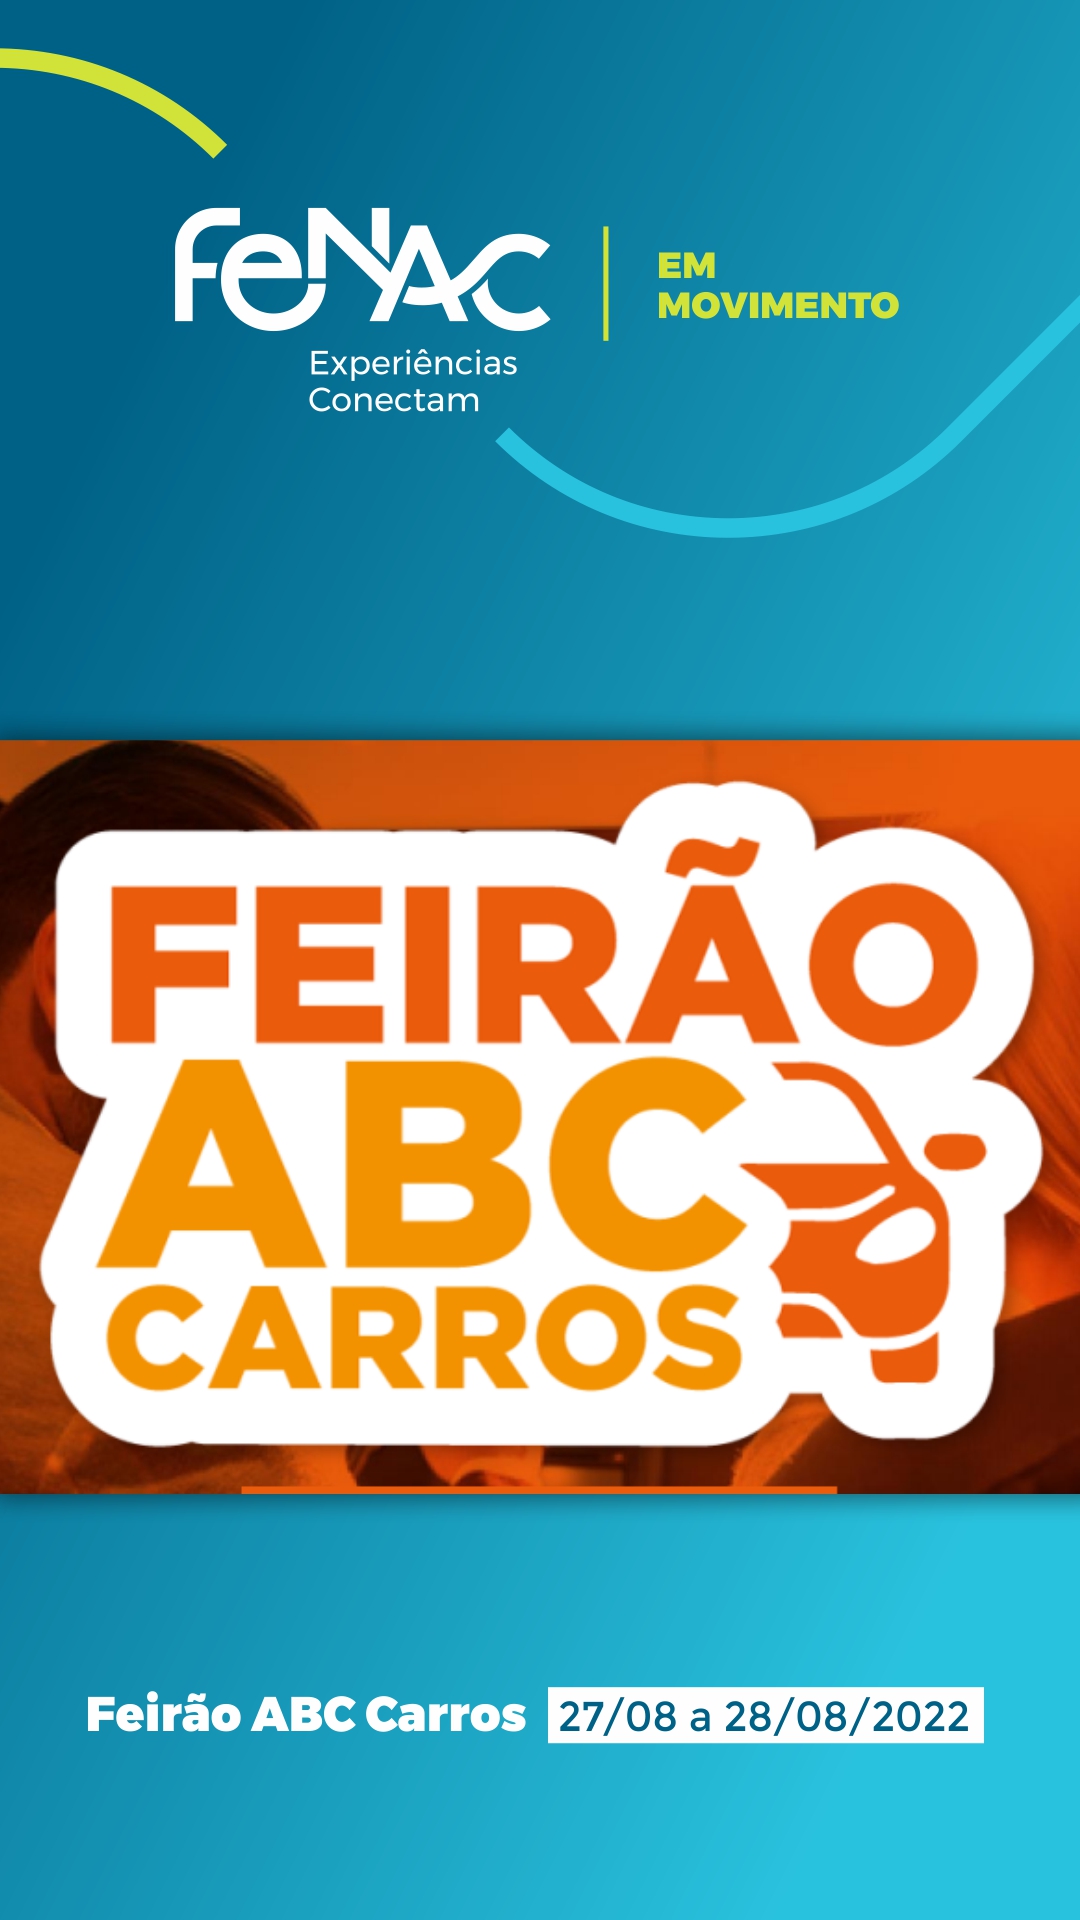 Feirão ABC Carros